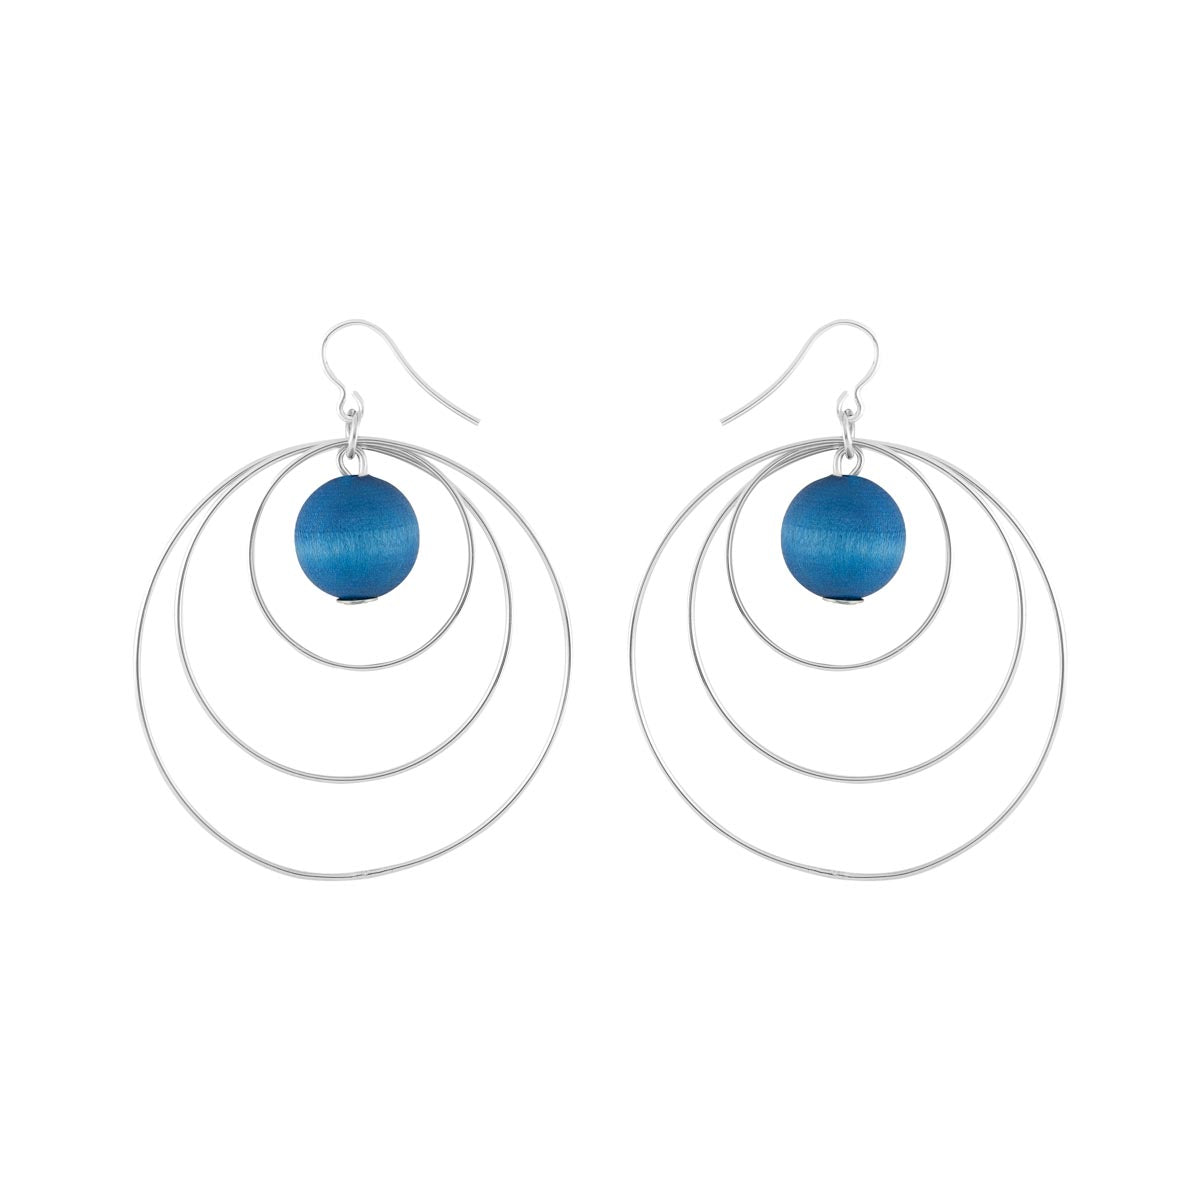 Piruetti earrings, blue